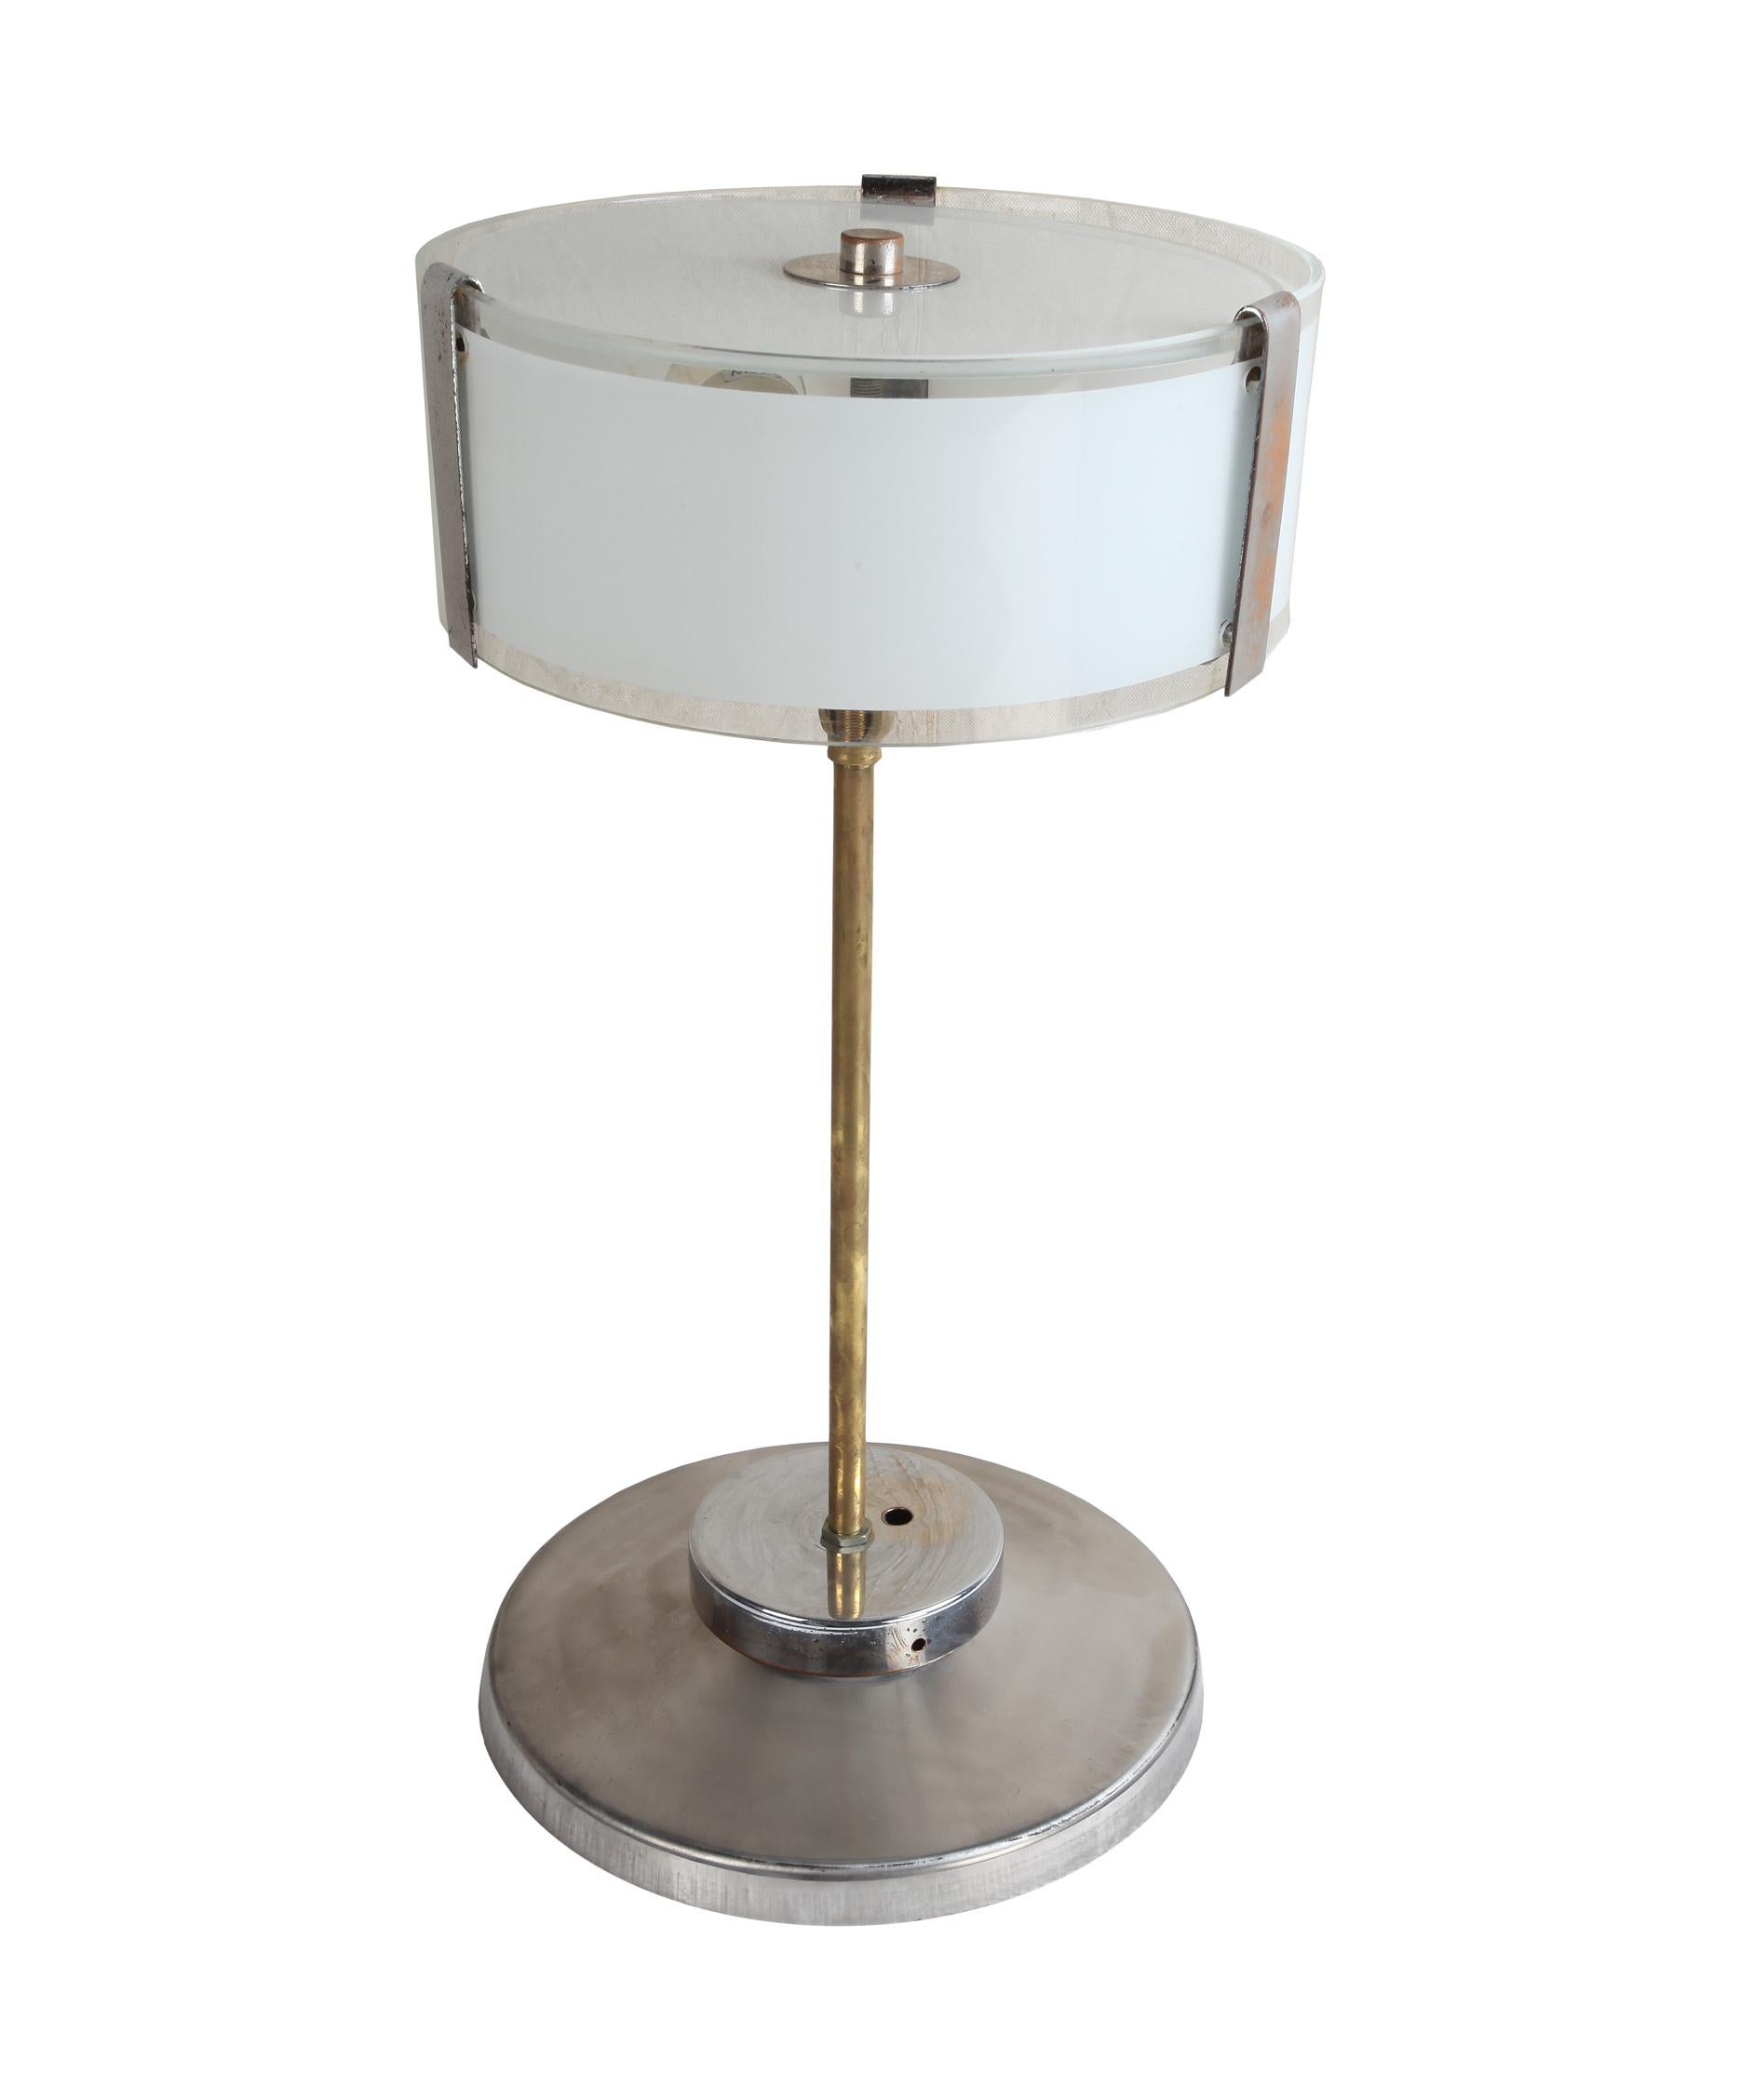 Paar verchromte Mid-Century Modern Tischlampen mit mattiertem Glasschirm. Stiel aus Messing. Jede Lampe hat zwei Standardfassungen und ist für den amerikanischen Gebrauch umverdrahtet. Europäisch. Diese könnten auch gut als Anhänger aussehen, siehe